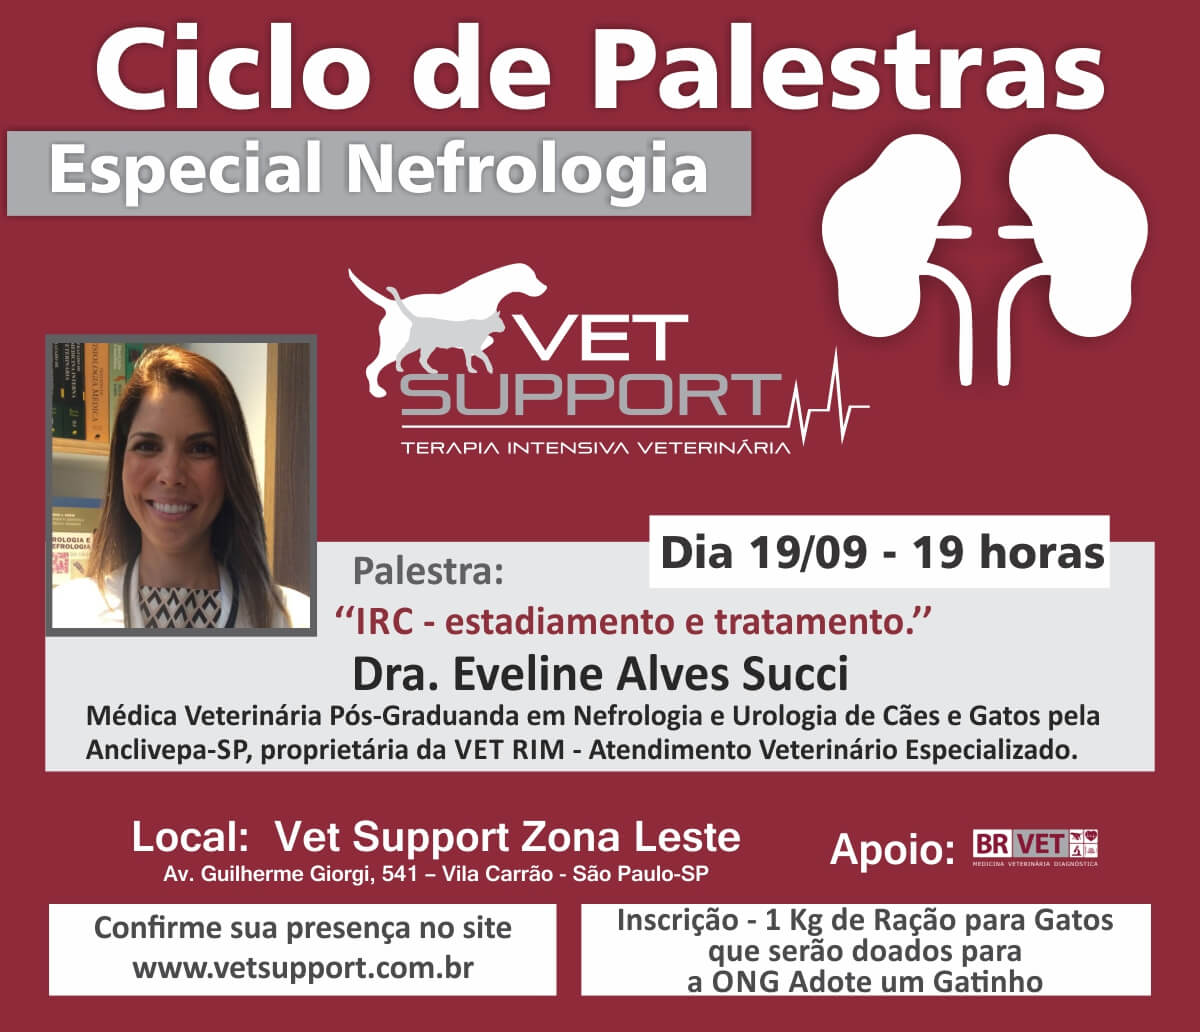 Ciclo de Palestras Vet Support 2017 Nefrologia Veterinária sobre Nefrologia Veterinária - PALESTRA 2